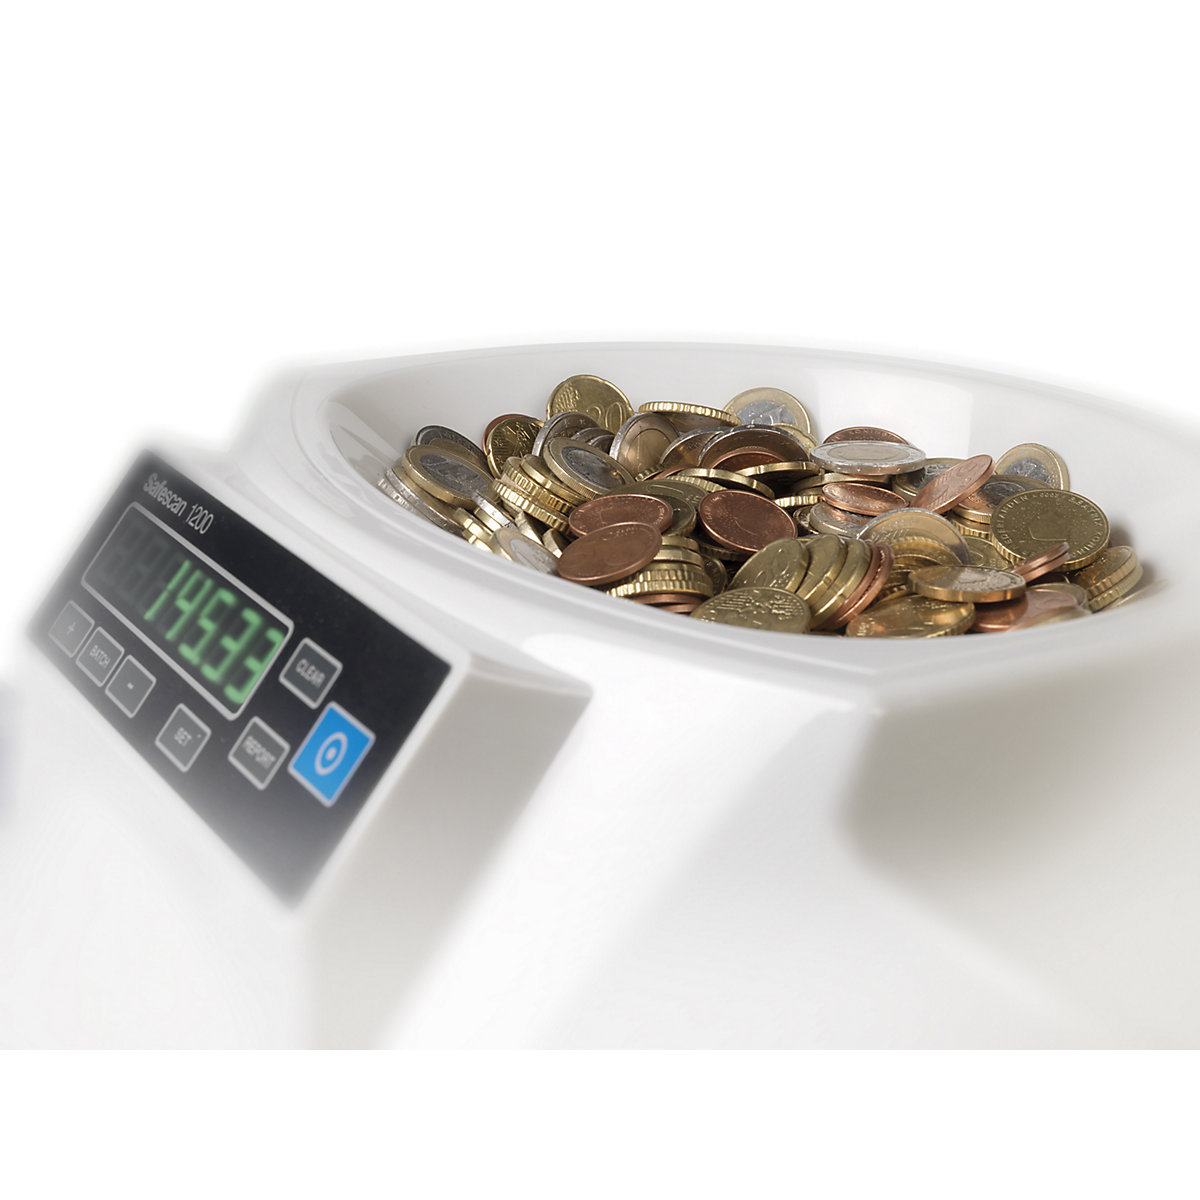 Brojač kovanica i uređaj za sortiranje kovanica – Safescan (Prikaz proizvoda 4)-3